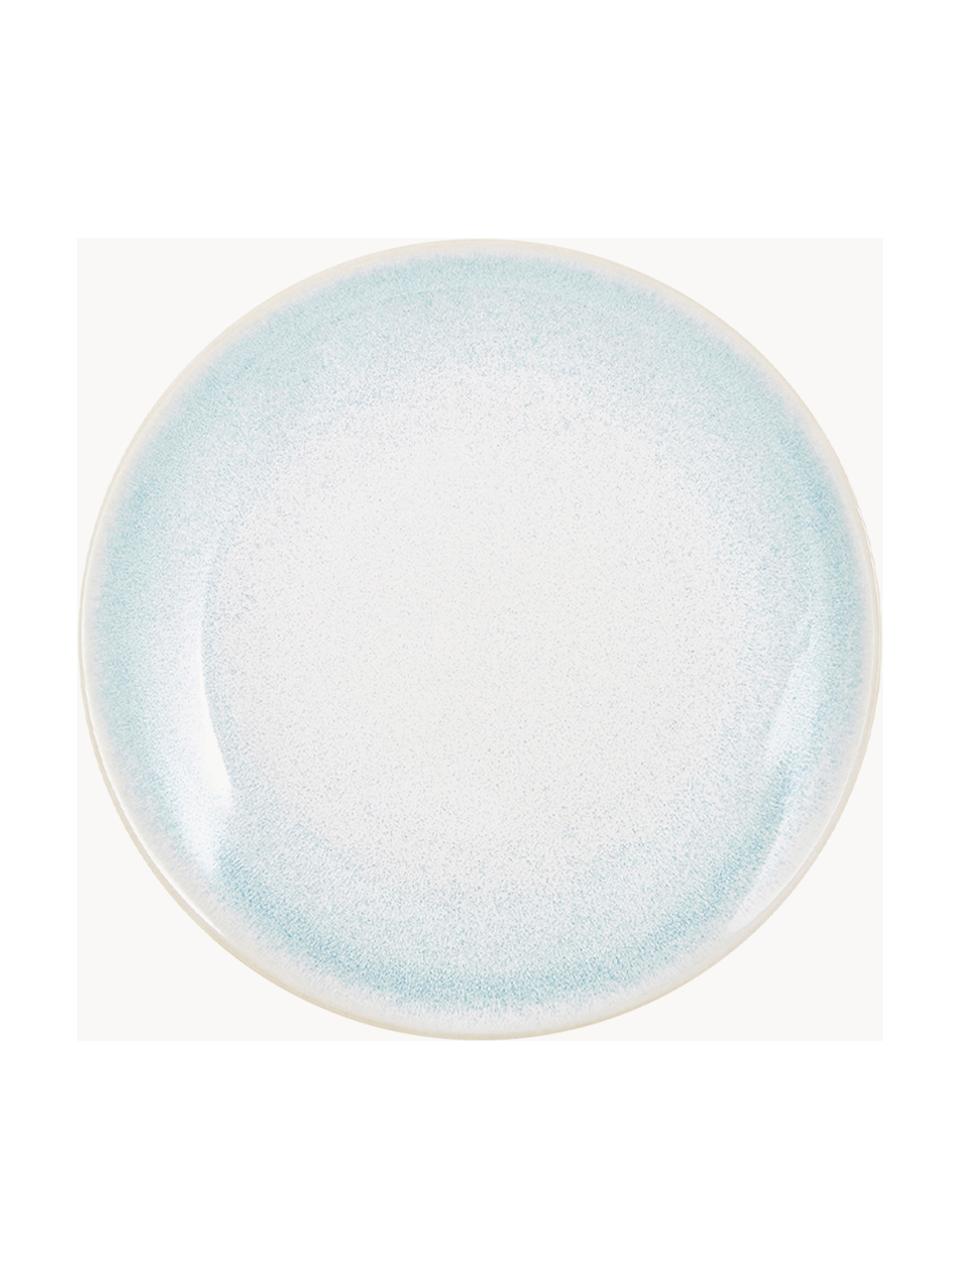 Piattino da dessert fatto a mano con smalto efficace Amalia 2 pz, Porcellana, Azzurro, bianco crema, Ø 20 cm